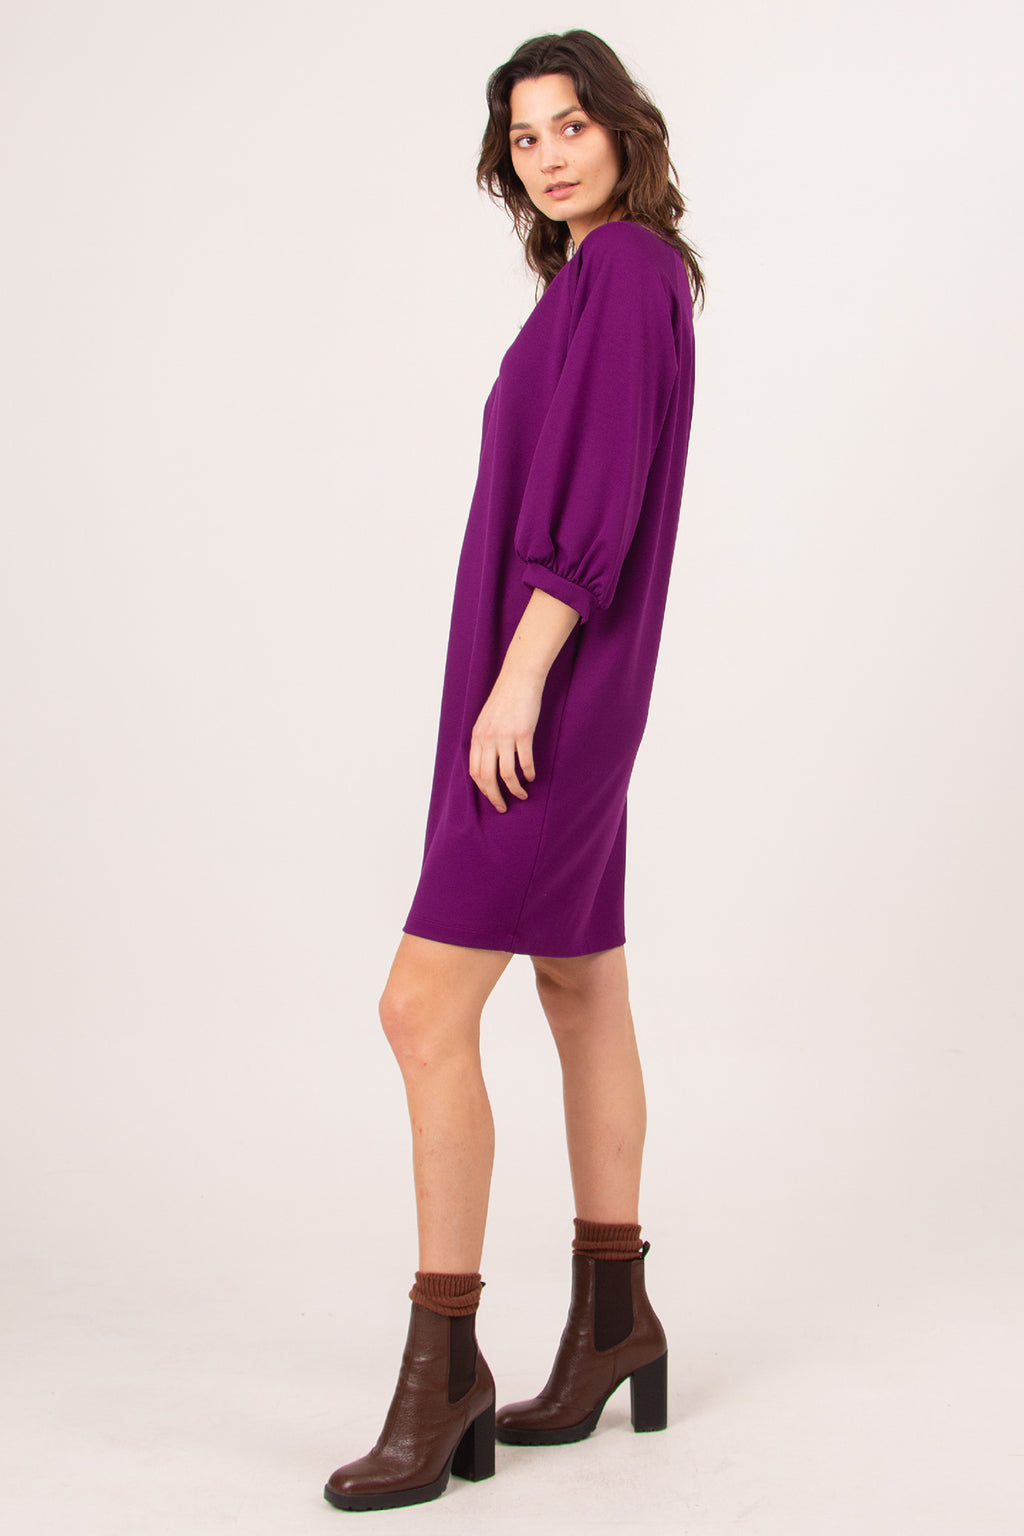 Bastra violet dress